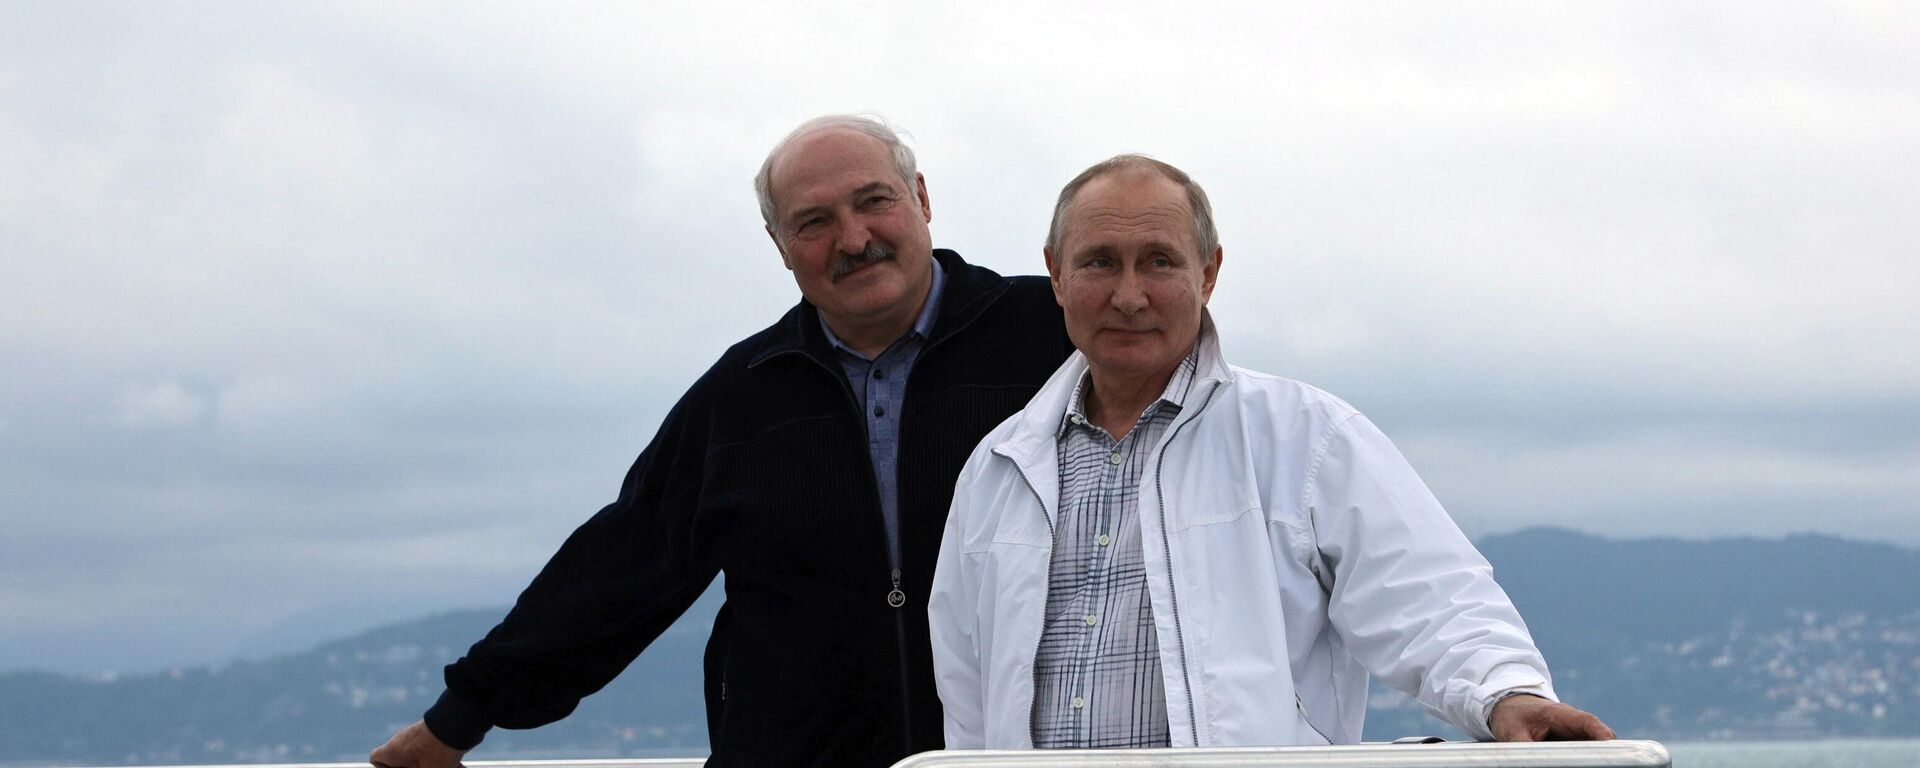 Rusijos prezidentas Vladimiras Putinas ir Baltarusijos prezidentas Aleksandras Lukašenka - Sputnik Lietuva, 1920, 31.05.2021